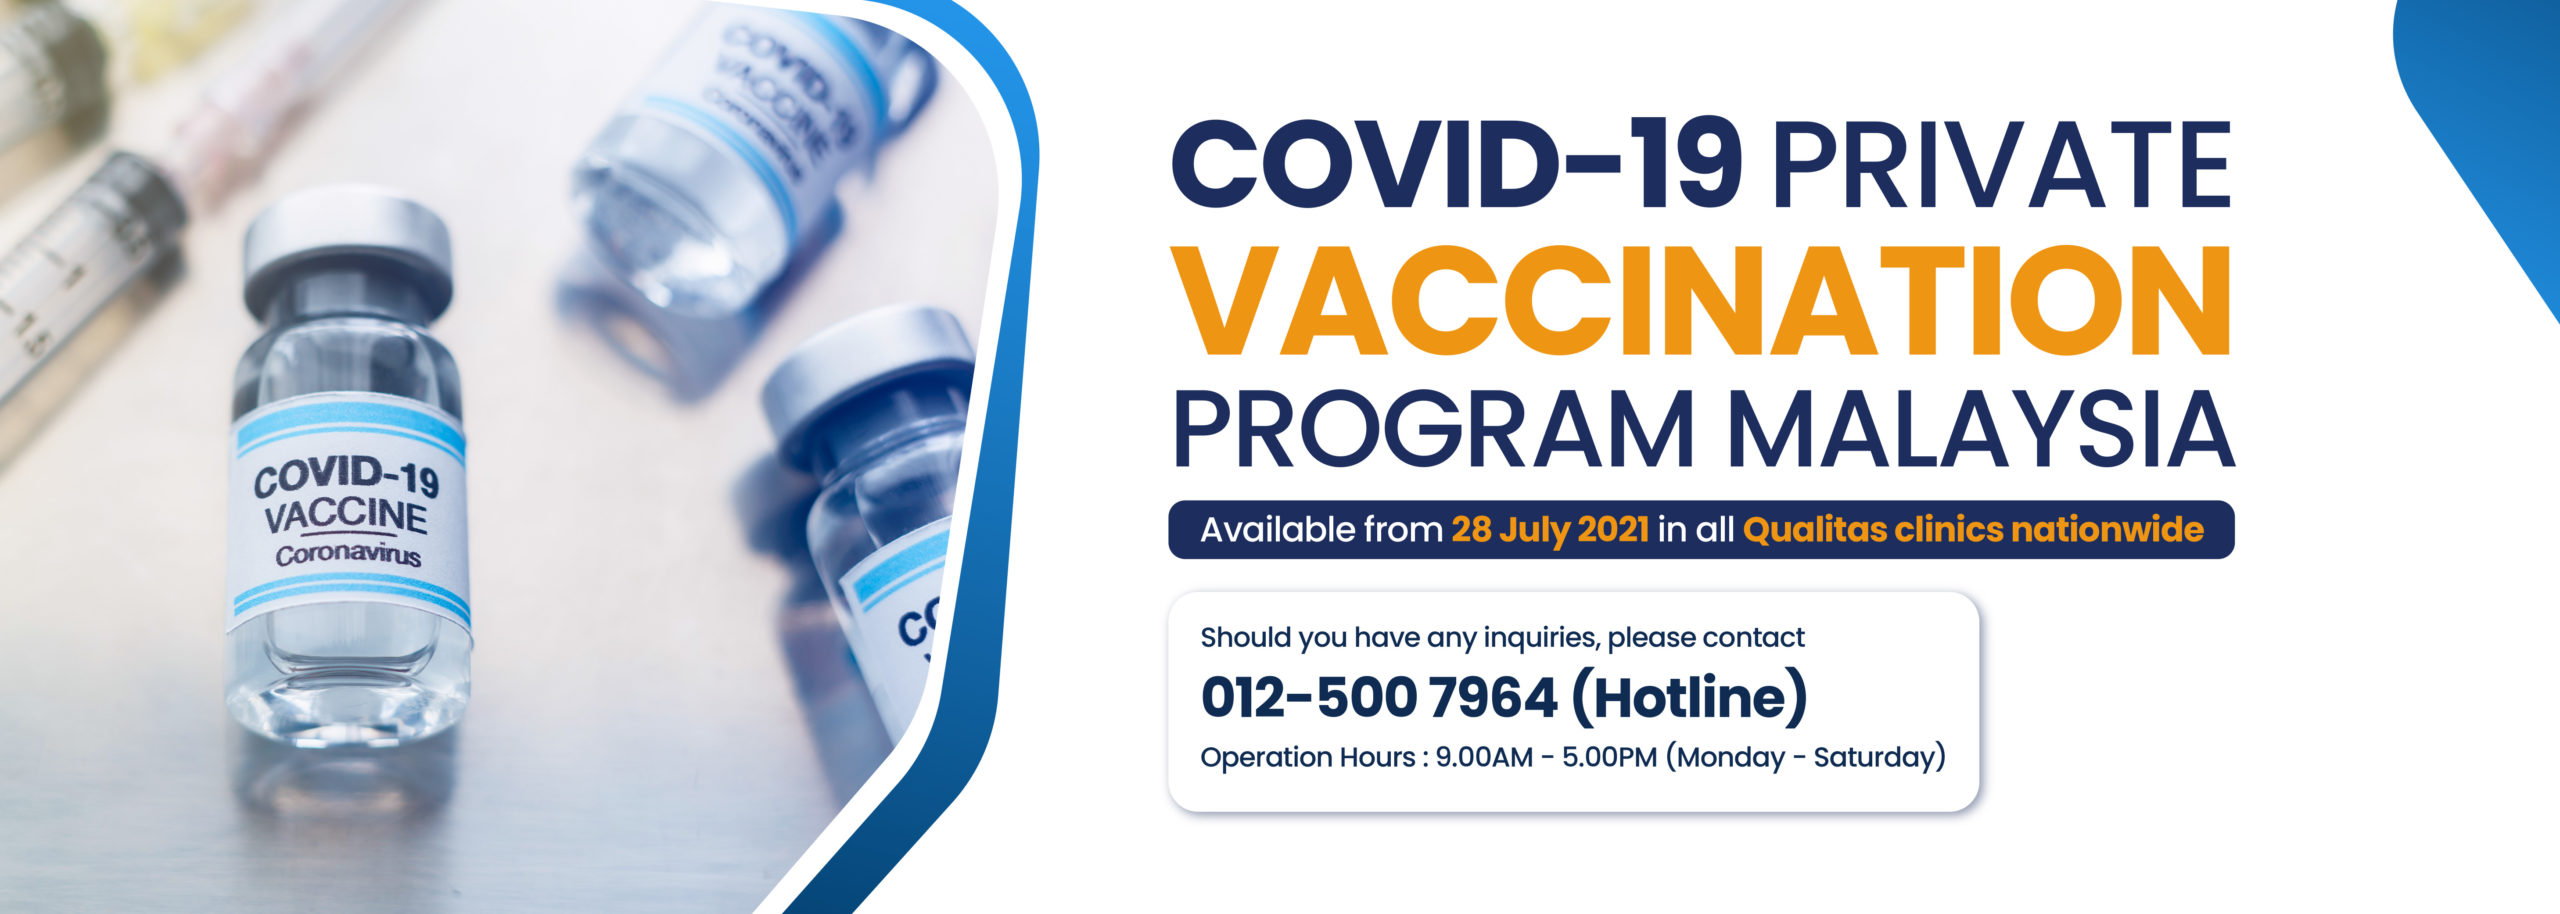 COVID-19 Private Vaccination in Malaysia